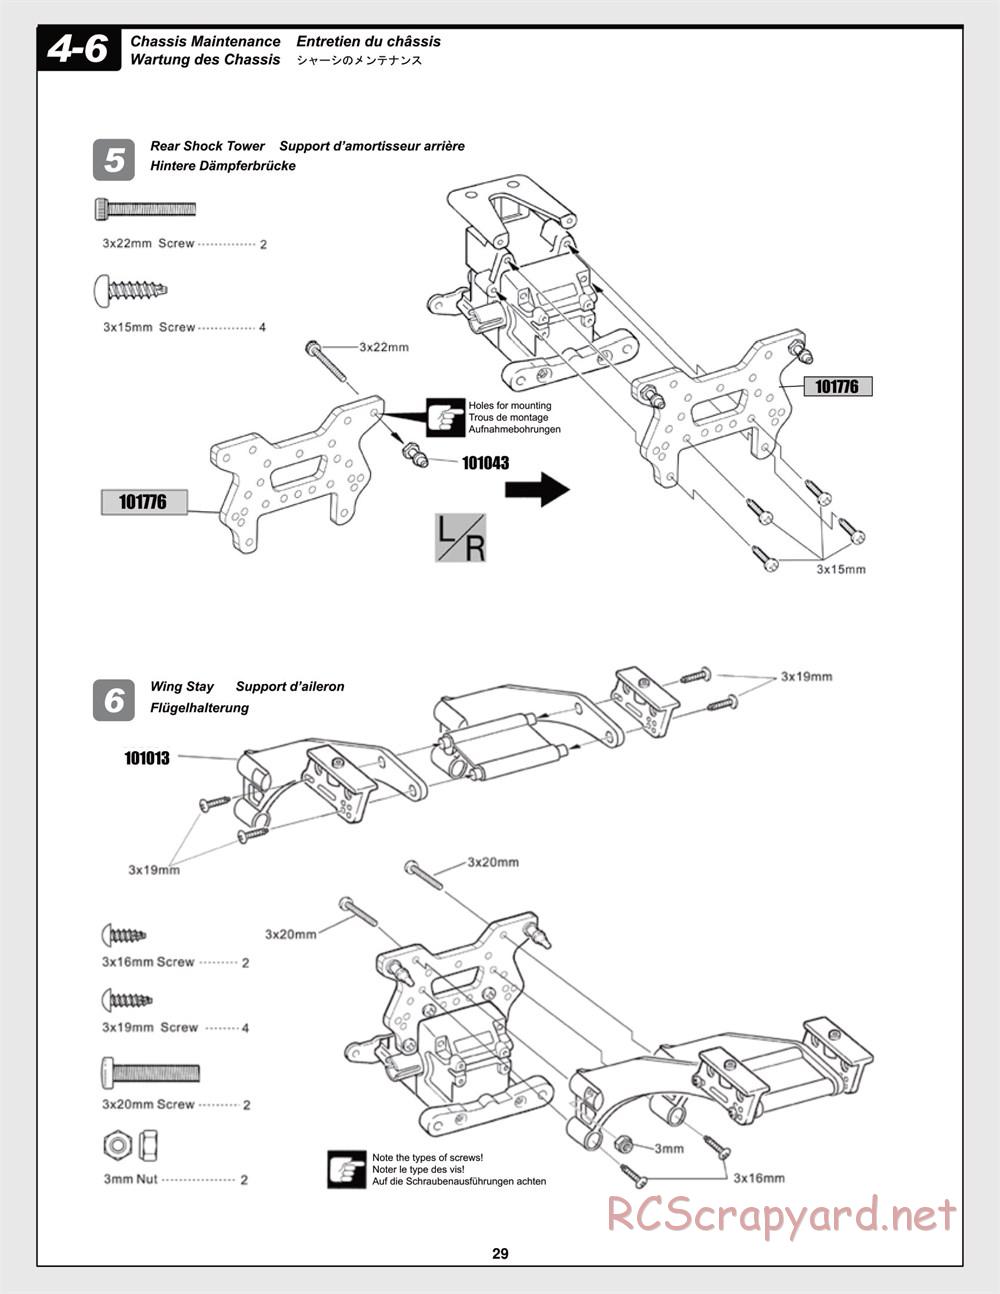 HPI - Trophy Flux Truggy - Manual - Page 29